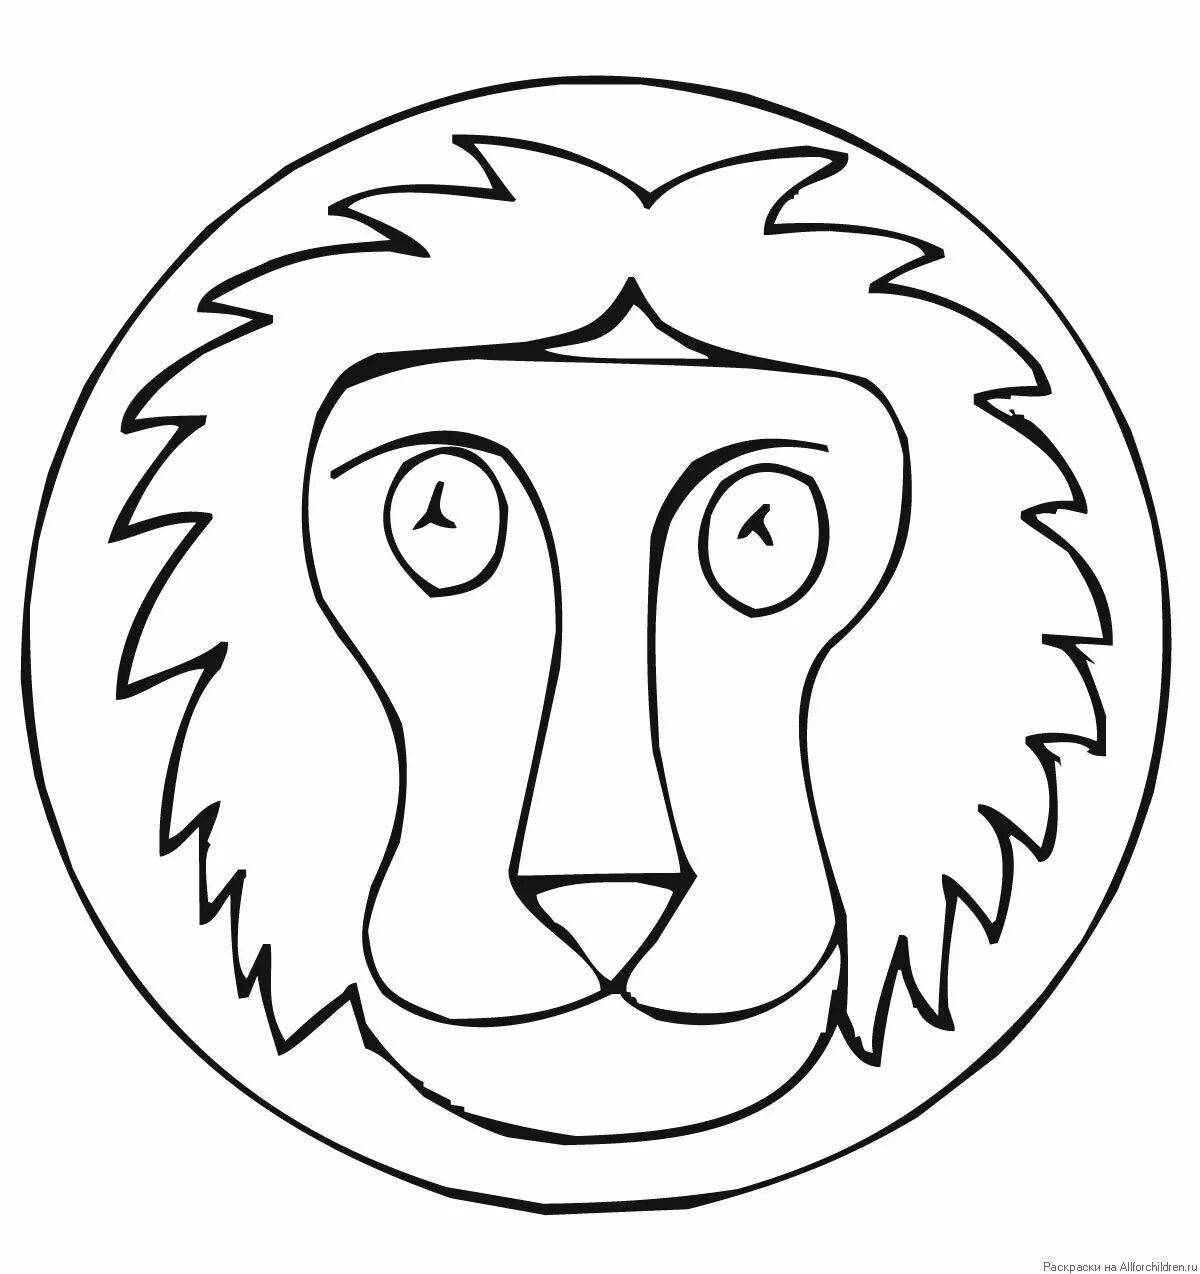 Раскраска роскошная голова льва